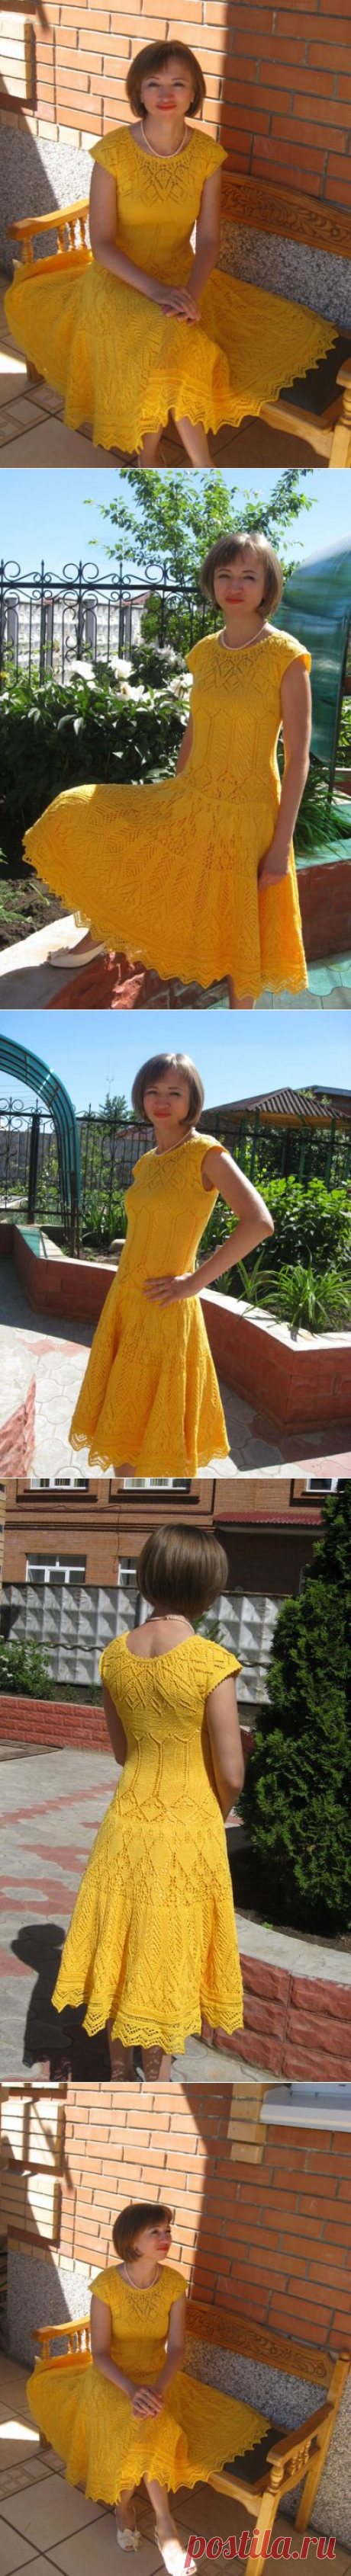 Желтое летнее платье | Шкатулочка для рукодельниц